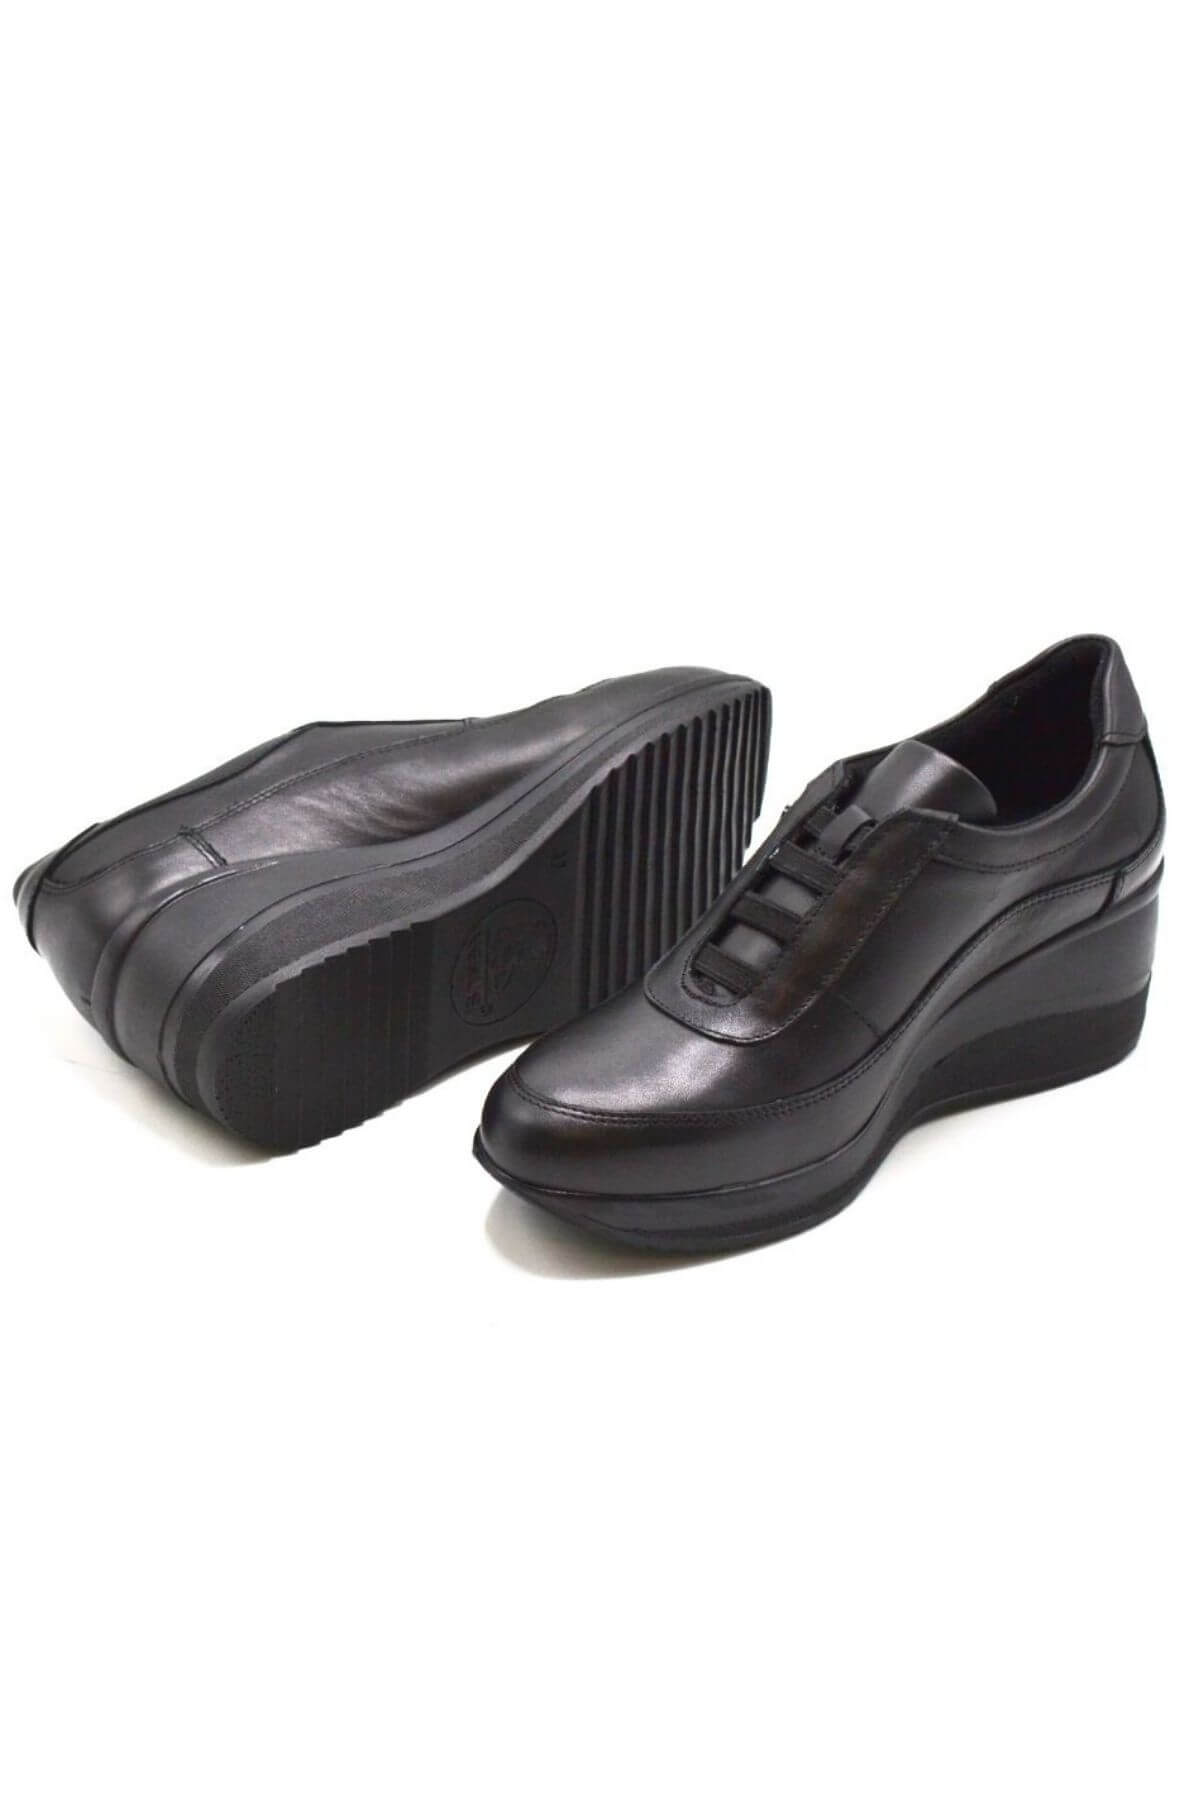 Kadın Dolgu Topuk Deri Ayakkabı Siyah 2111520K - Thumbnail